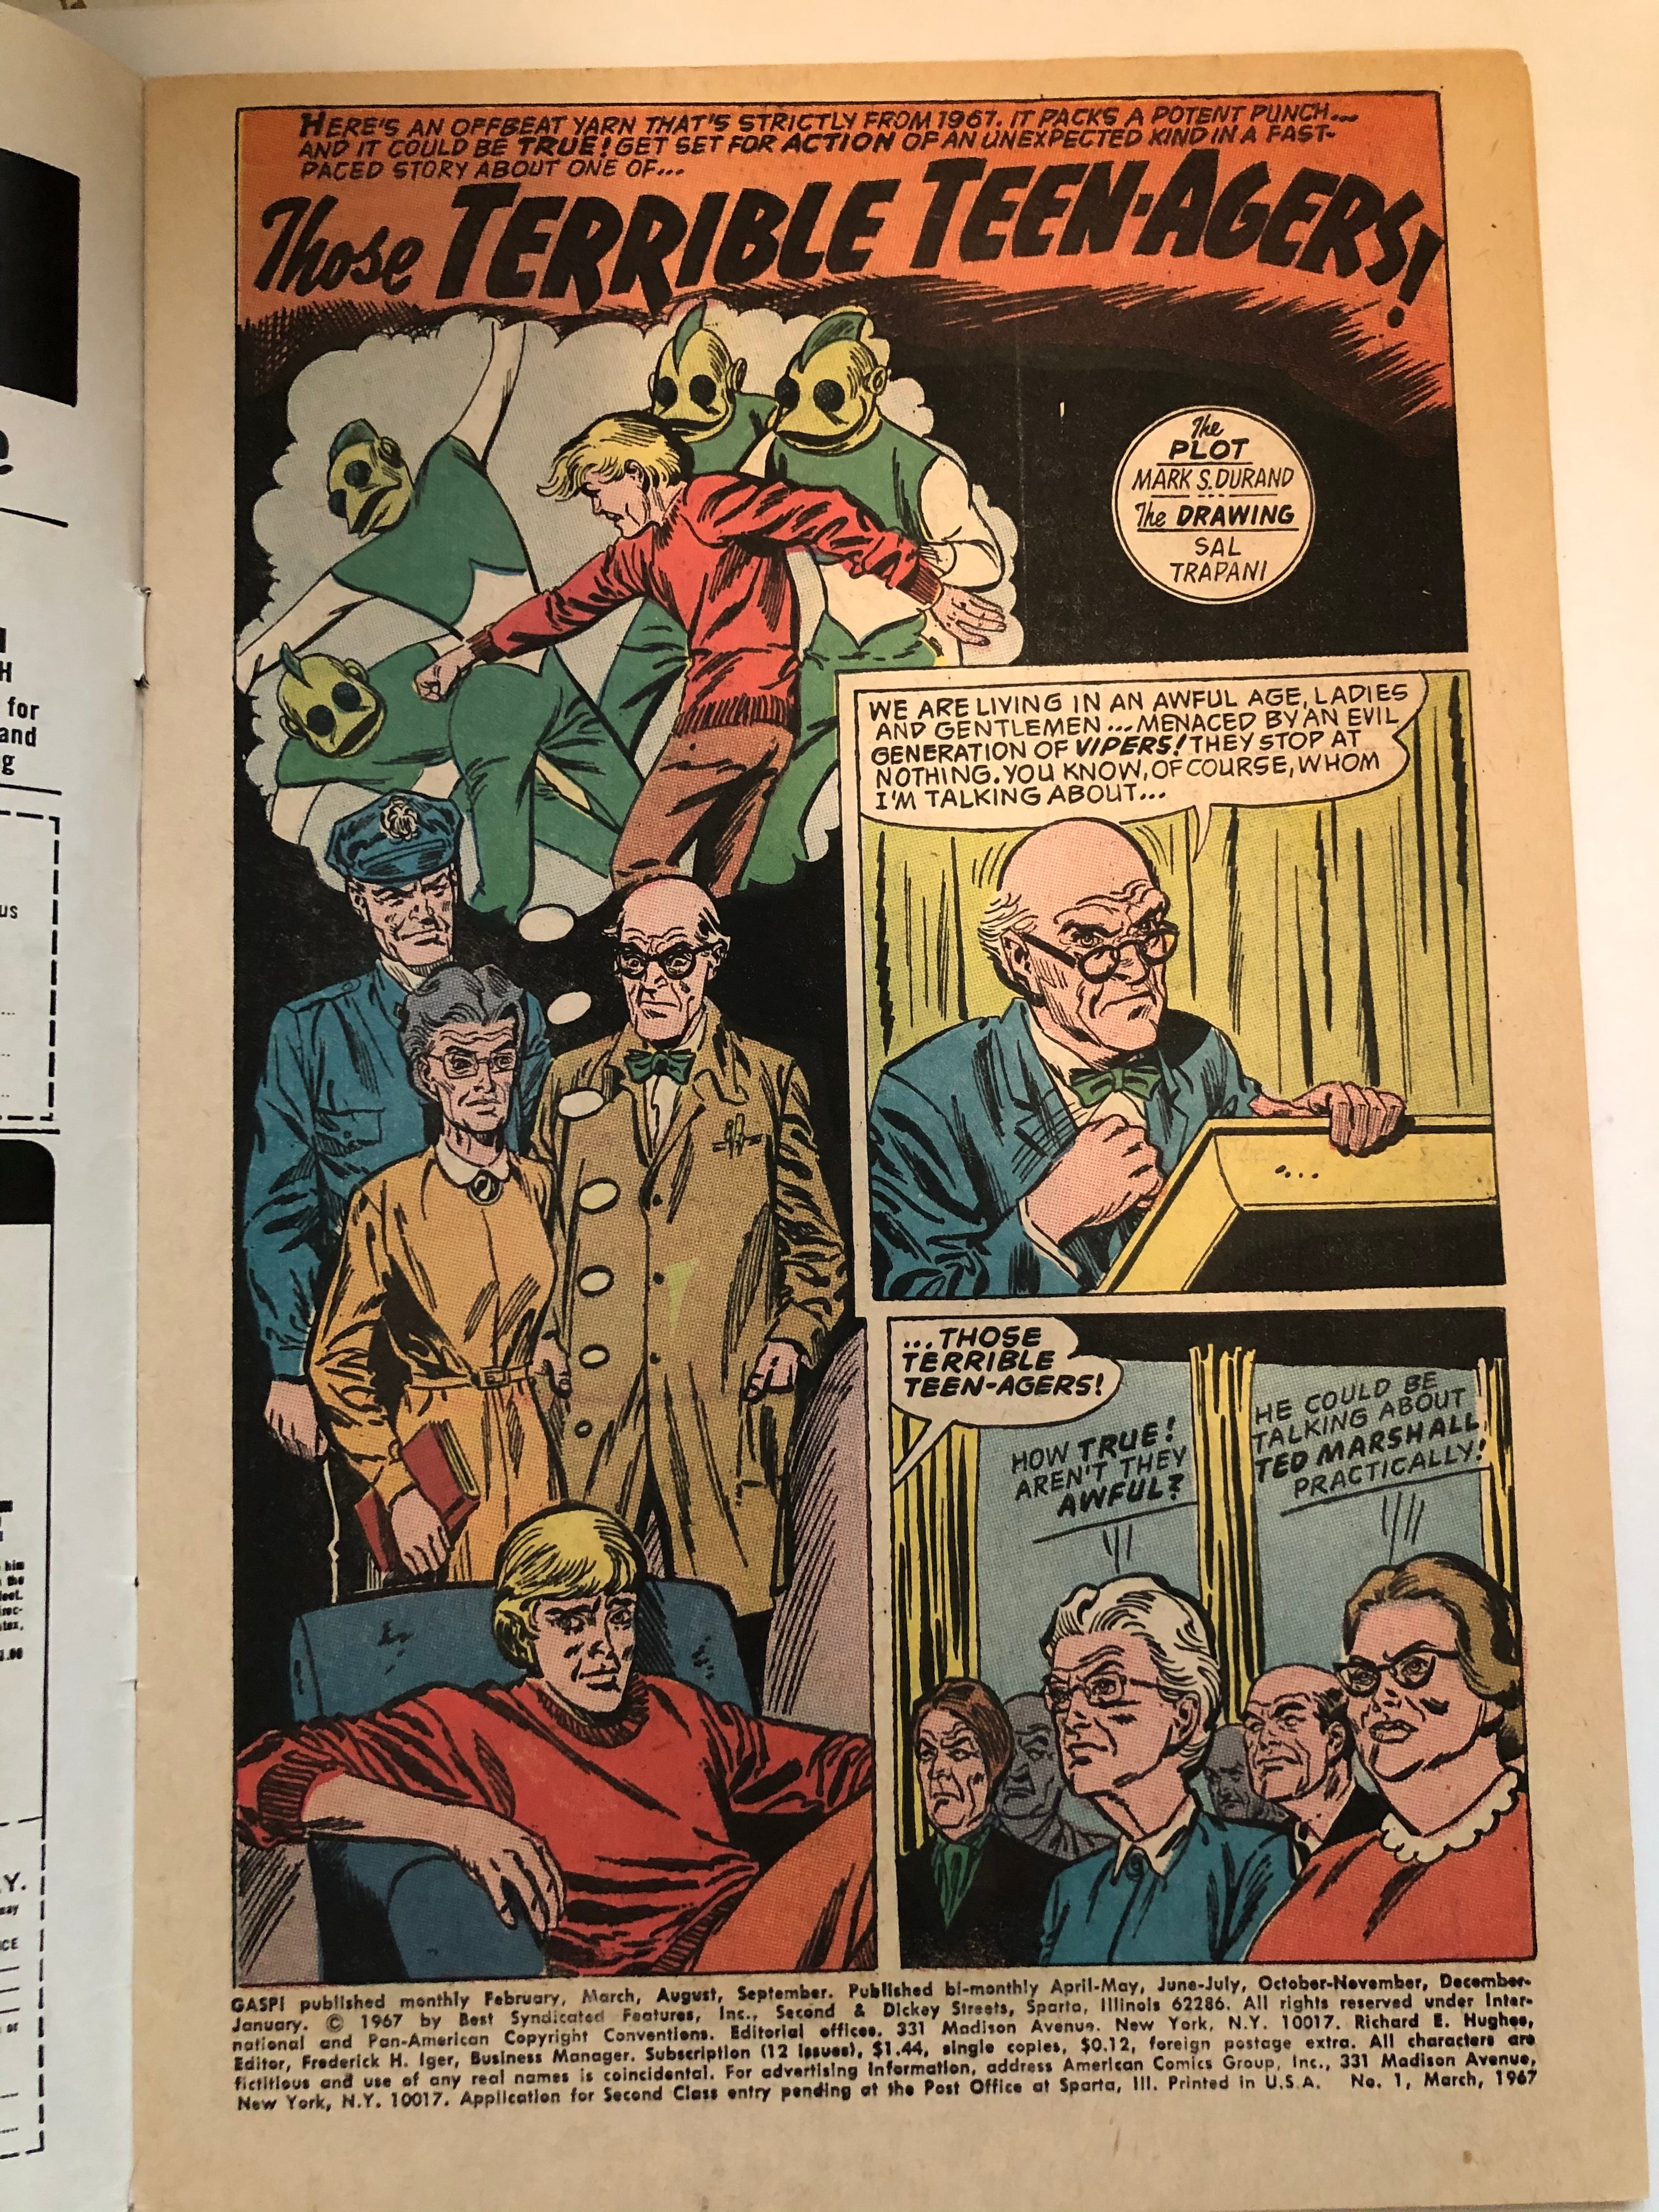 Gasp #1 rare comic book 1967